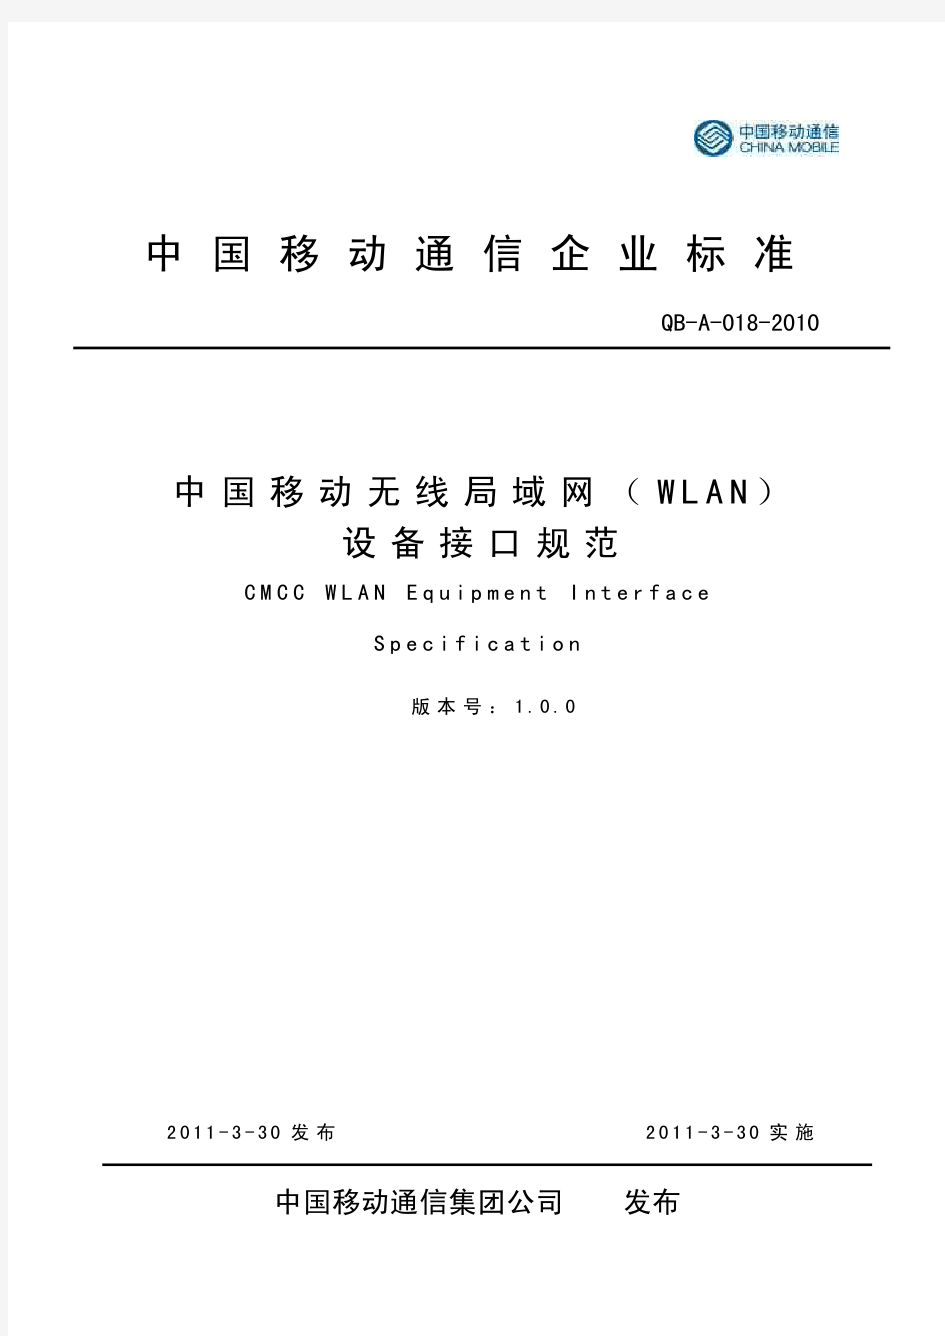 中国移动无线局域网(WLAN)设备接口规范V1.0.0